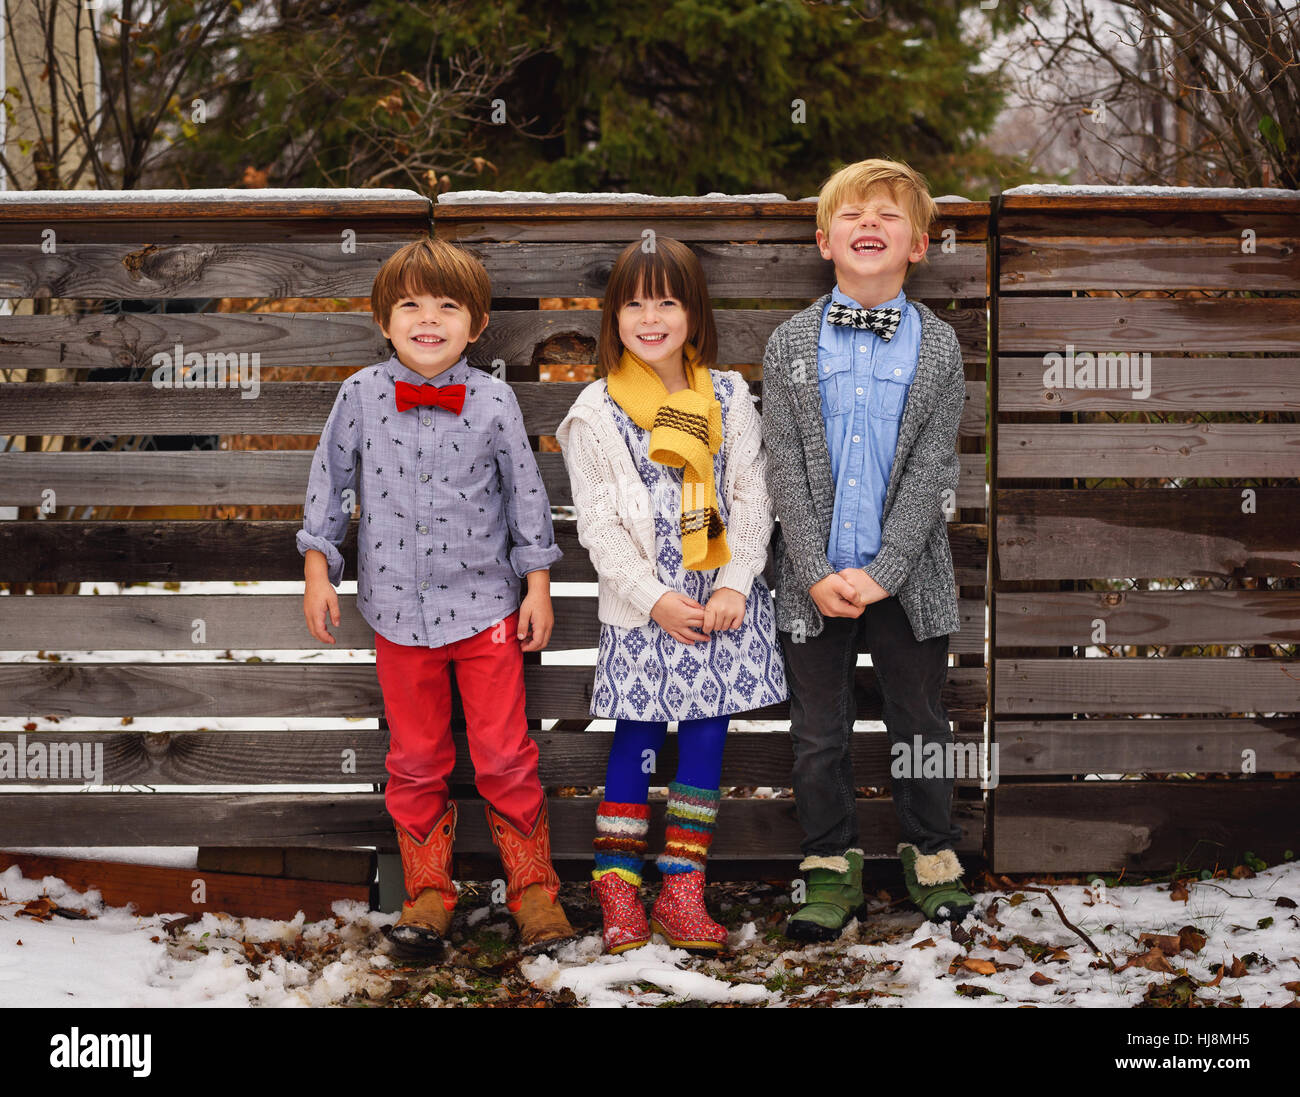 Drei glückliche Kinder, die durch einen Zaun im Garten stehen Stockfoto